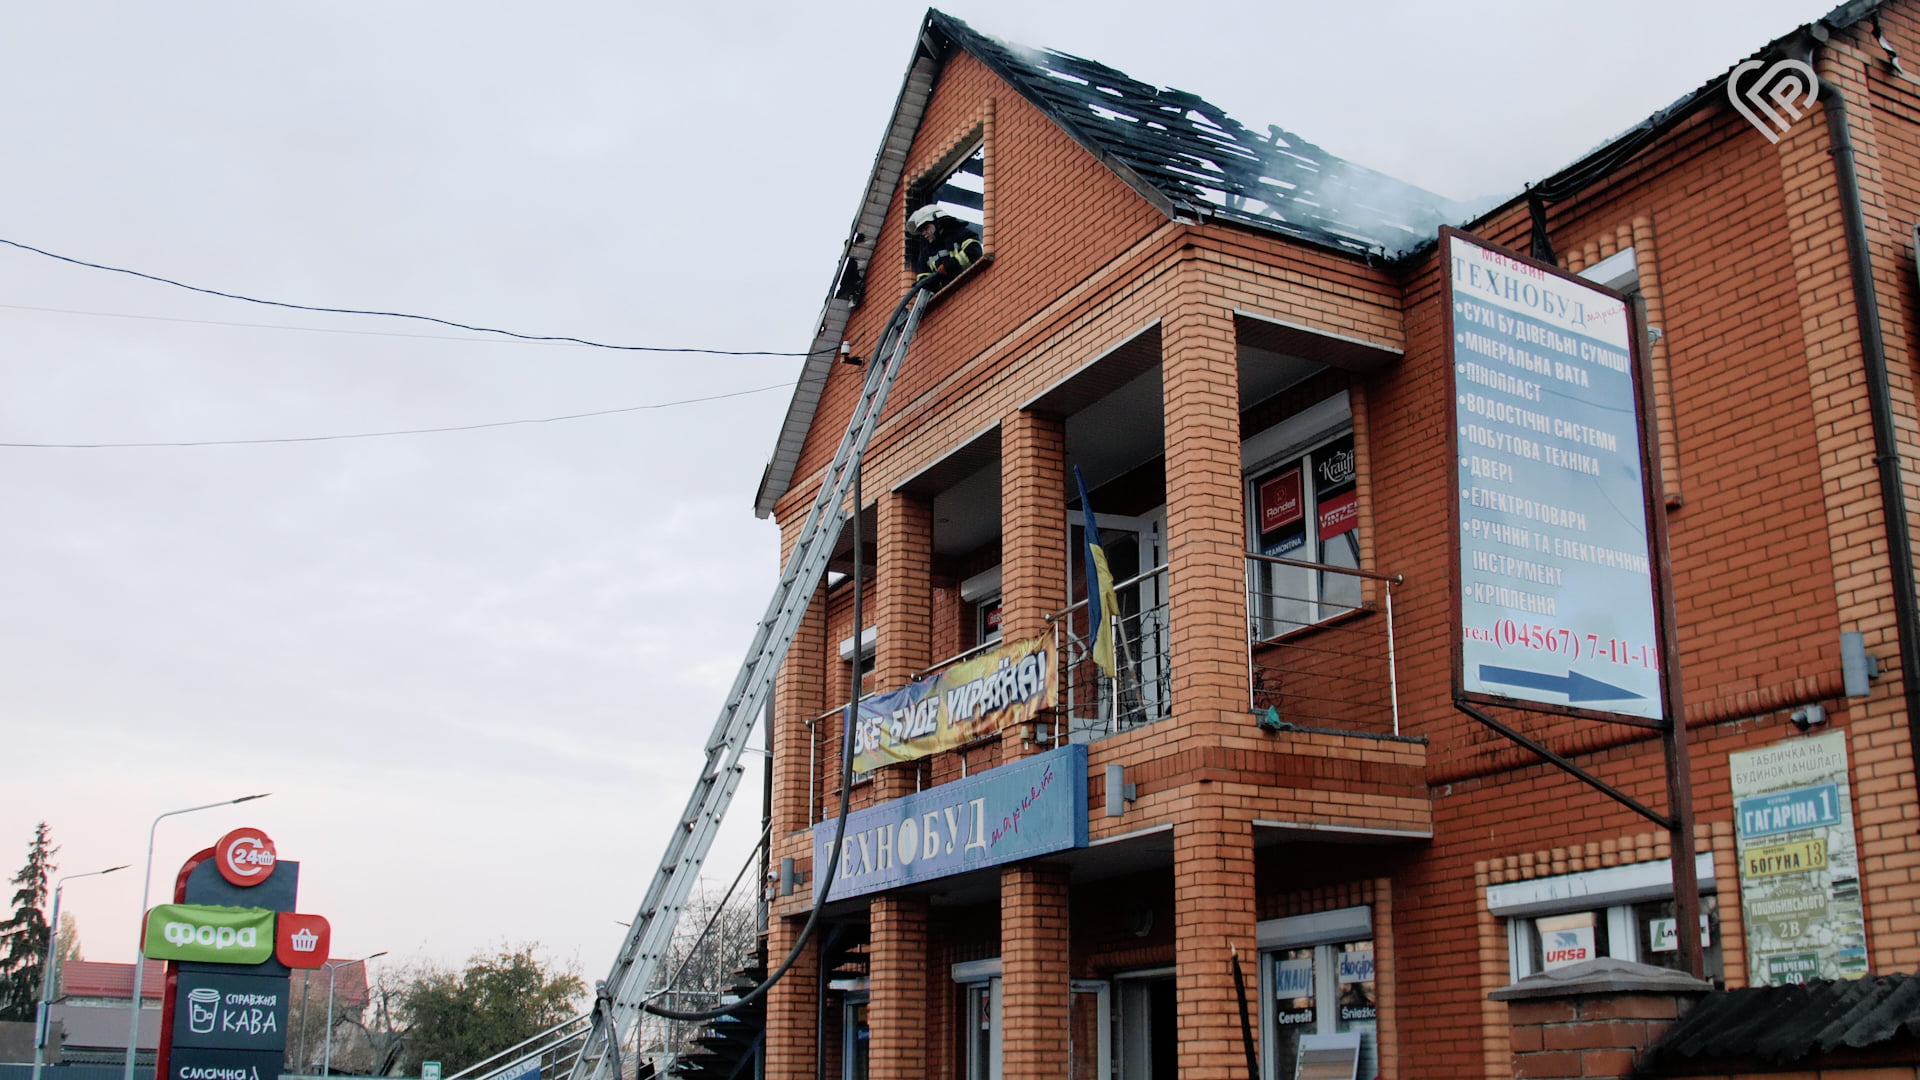 У Переяславі горів магазин «Технобуд»: вщент вигорів дах, причини та збитки встановлюються (фото та відео з місця подій)